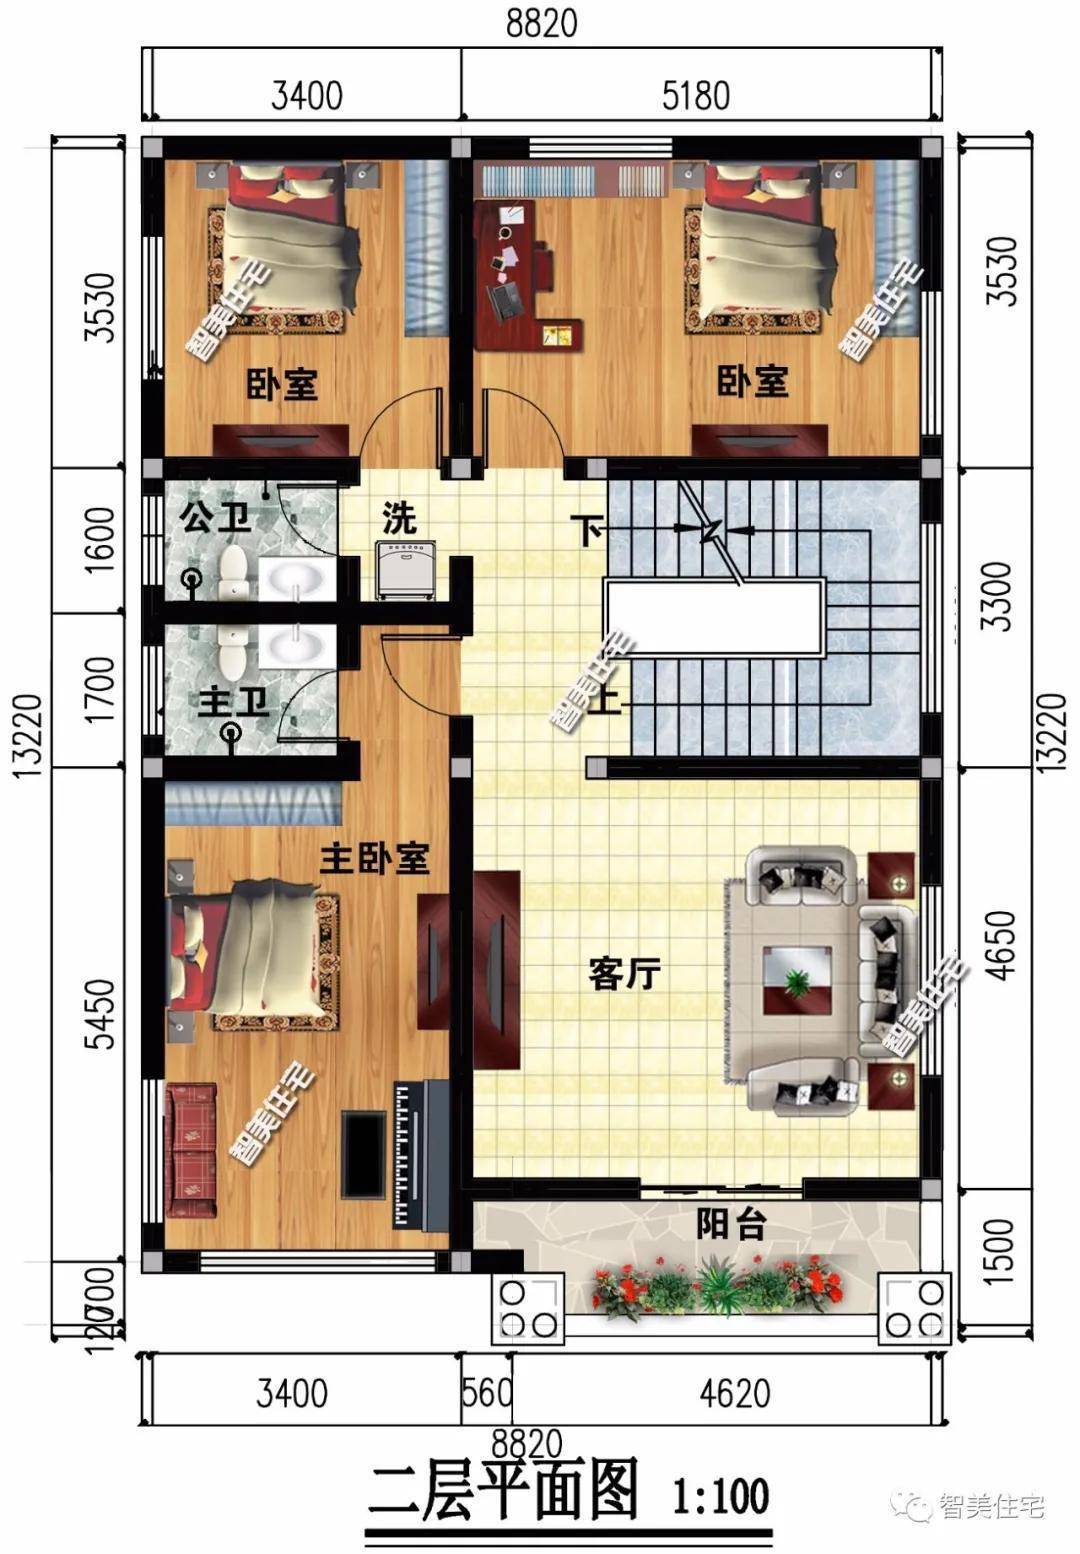 平面图:一层南北通透,有宽敞的客厅和茶室(堂屋),一间父母房,二层设三